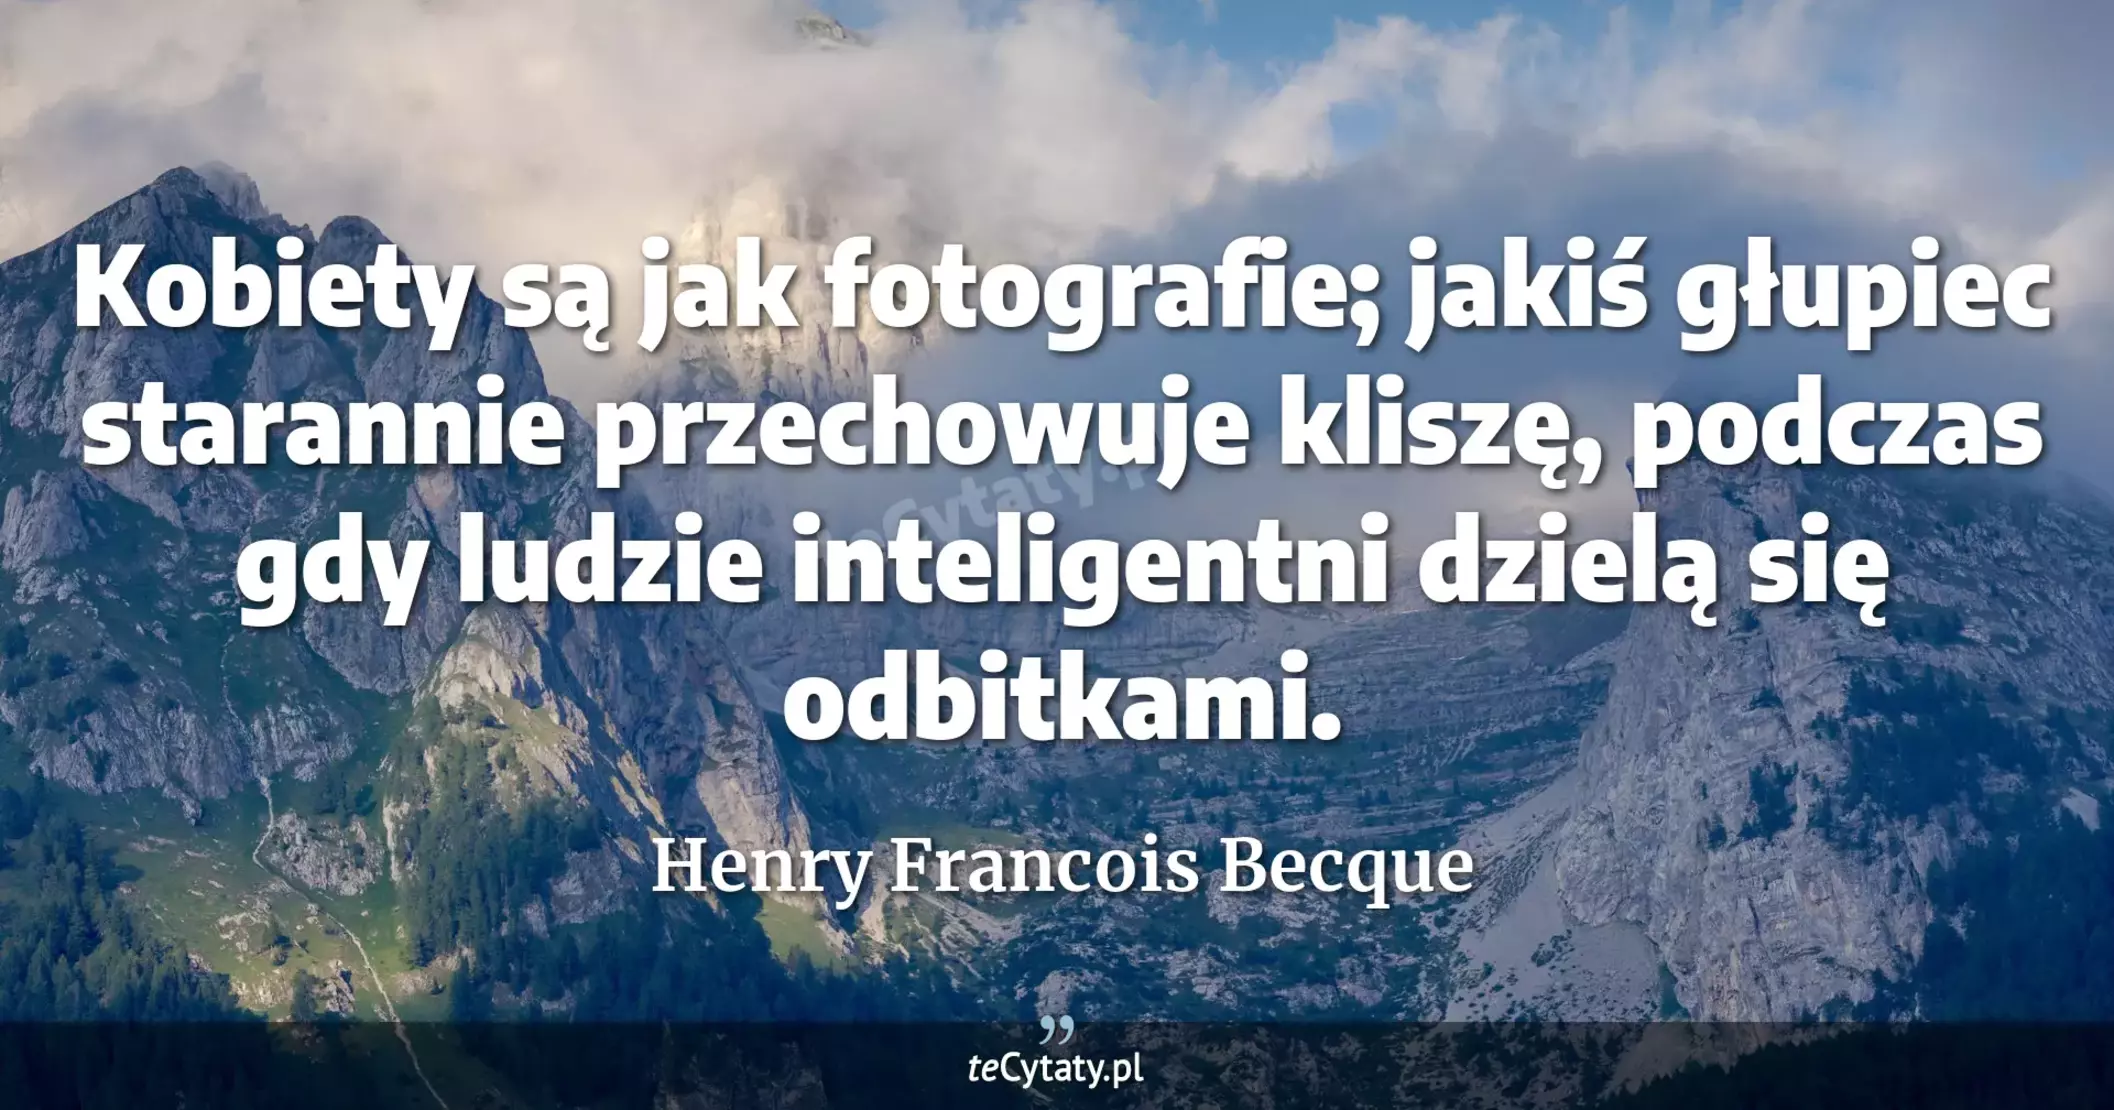 Kobiety są jak fotografie; jakiś głupiec starannie przechowuje kliszę, podczas gdy ludzie inteligentni dzielą się odbitkami. - Henry Francois Becque